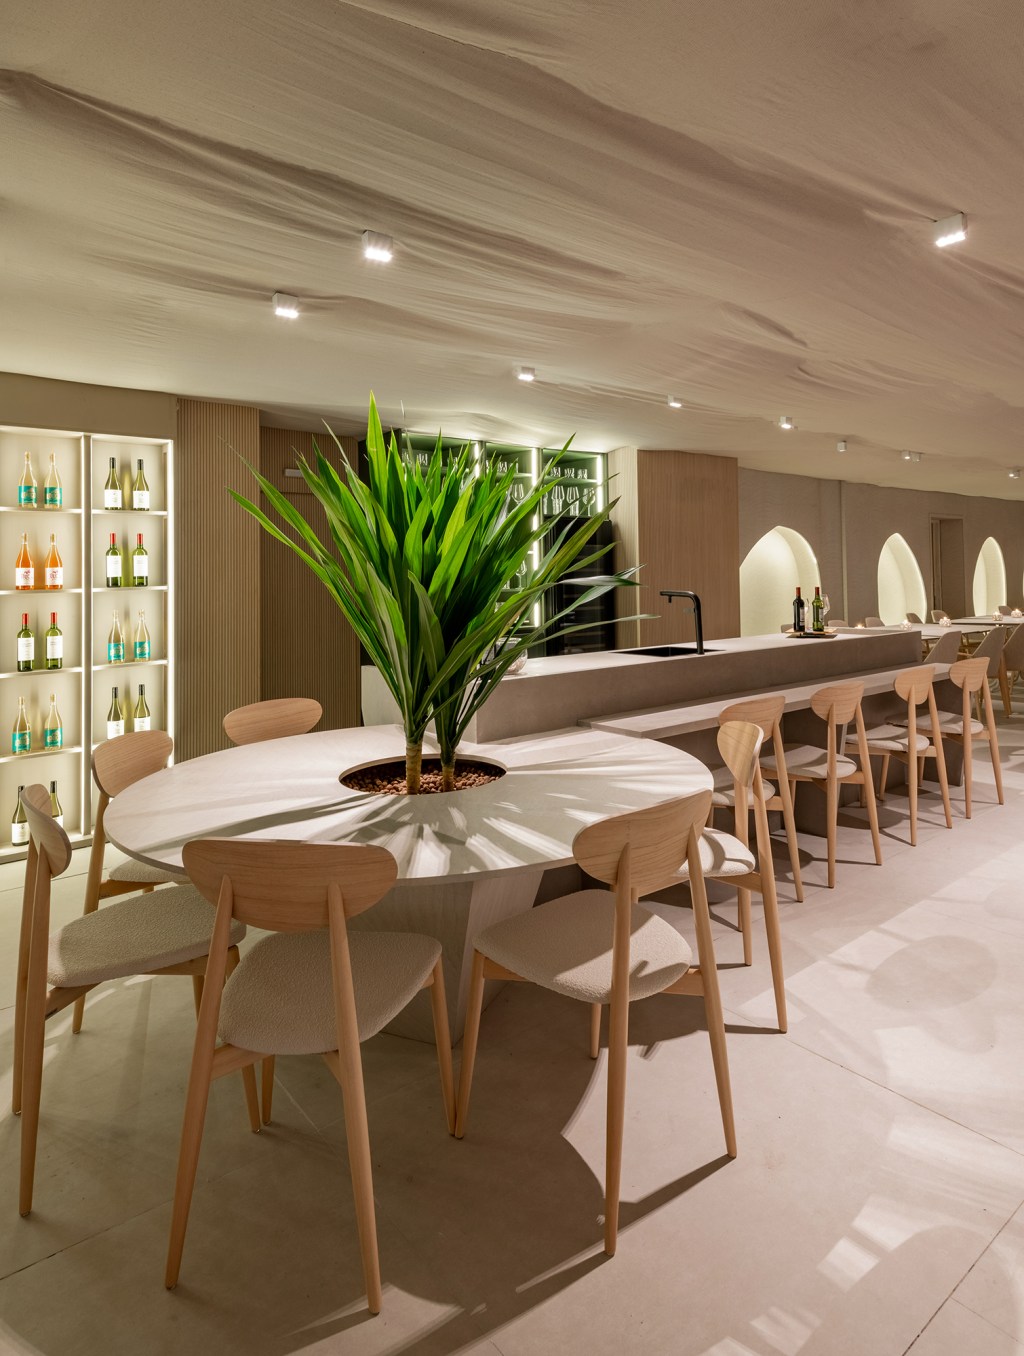 Vilaville Arquitetura - Restaurante Horta. Projeto da CASACOR São Paulo 2023. Na foto, mesa redonda com plantas, balcão de bar e adega iluminada.